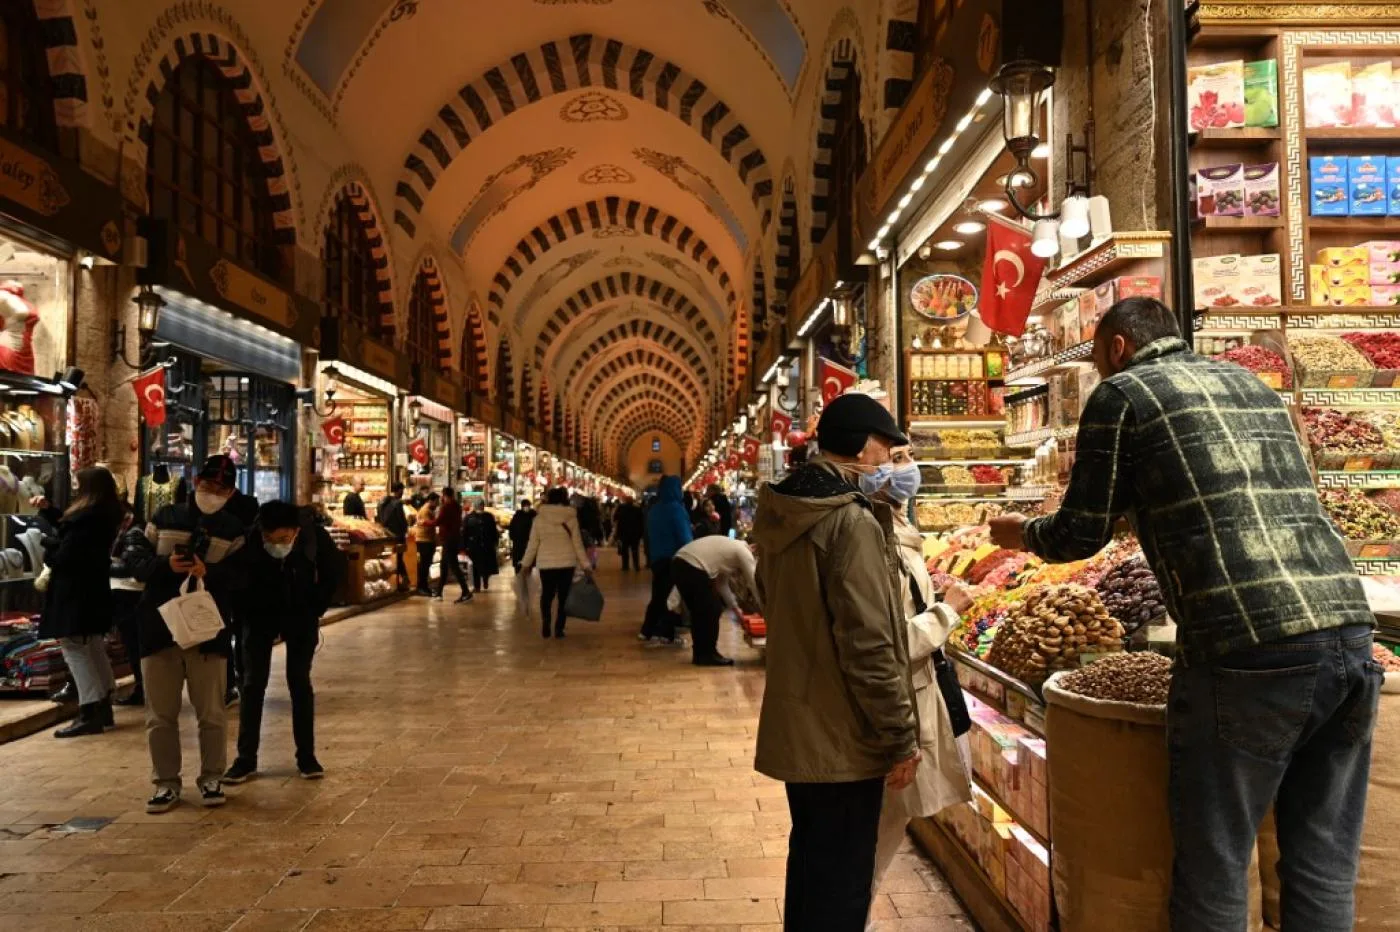 سياح يتسوقون في بازار التوابل بمنطقة إمينونو في إسطنبول، في 16 كانون الأول/ ديسمبر 2021.